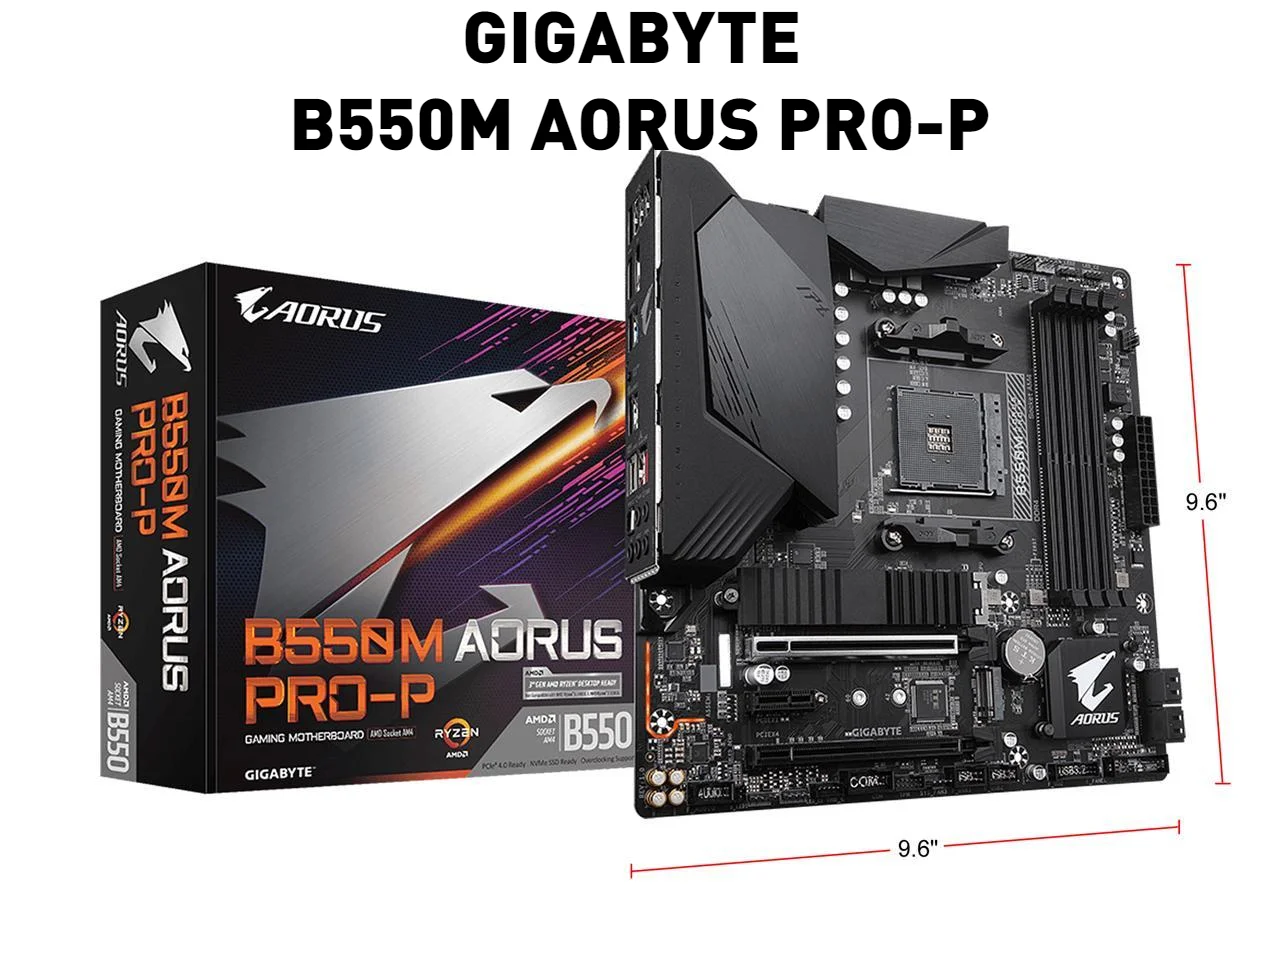 

GIGABYTE B550M AORUS PRO-P Motherboard AM4 AMD B550 Ryzen 5000 Series SATA 6Gb/s USB 3.0 Micro ATX DDR4 M.2 PCI Express 4.0 X16